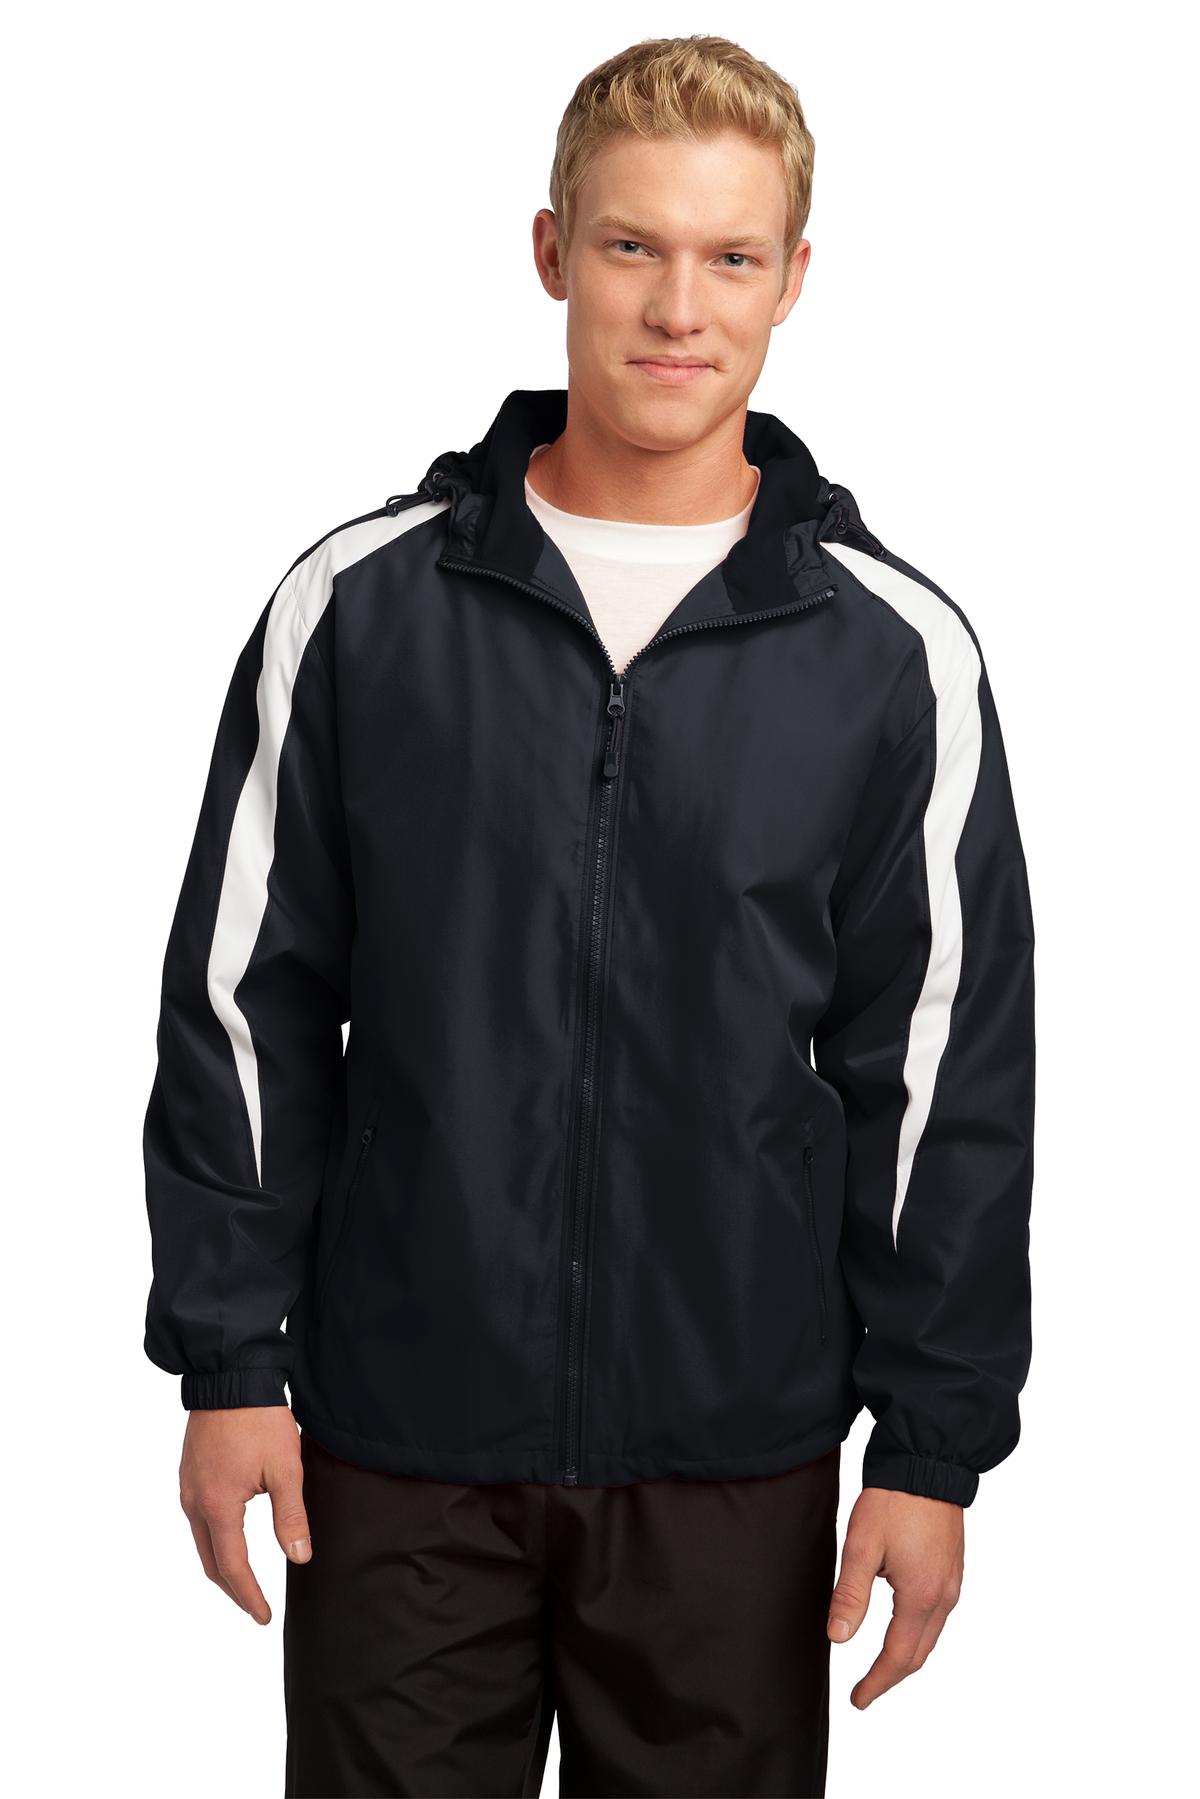 Sport-Tek Hospitality Activewear & Outerwear ® Fleece-Lined Colorblock Jacket.-Sport-Tek